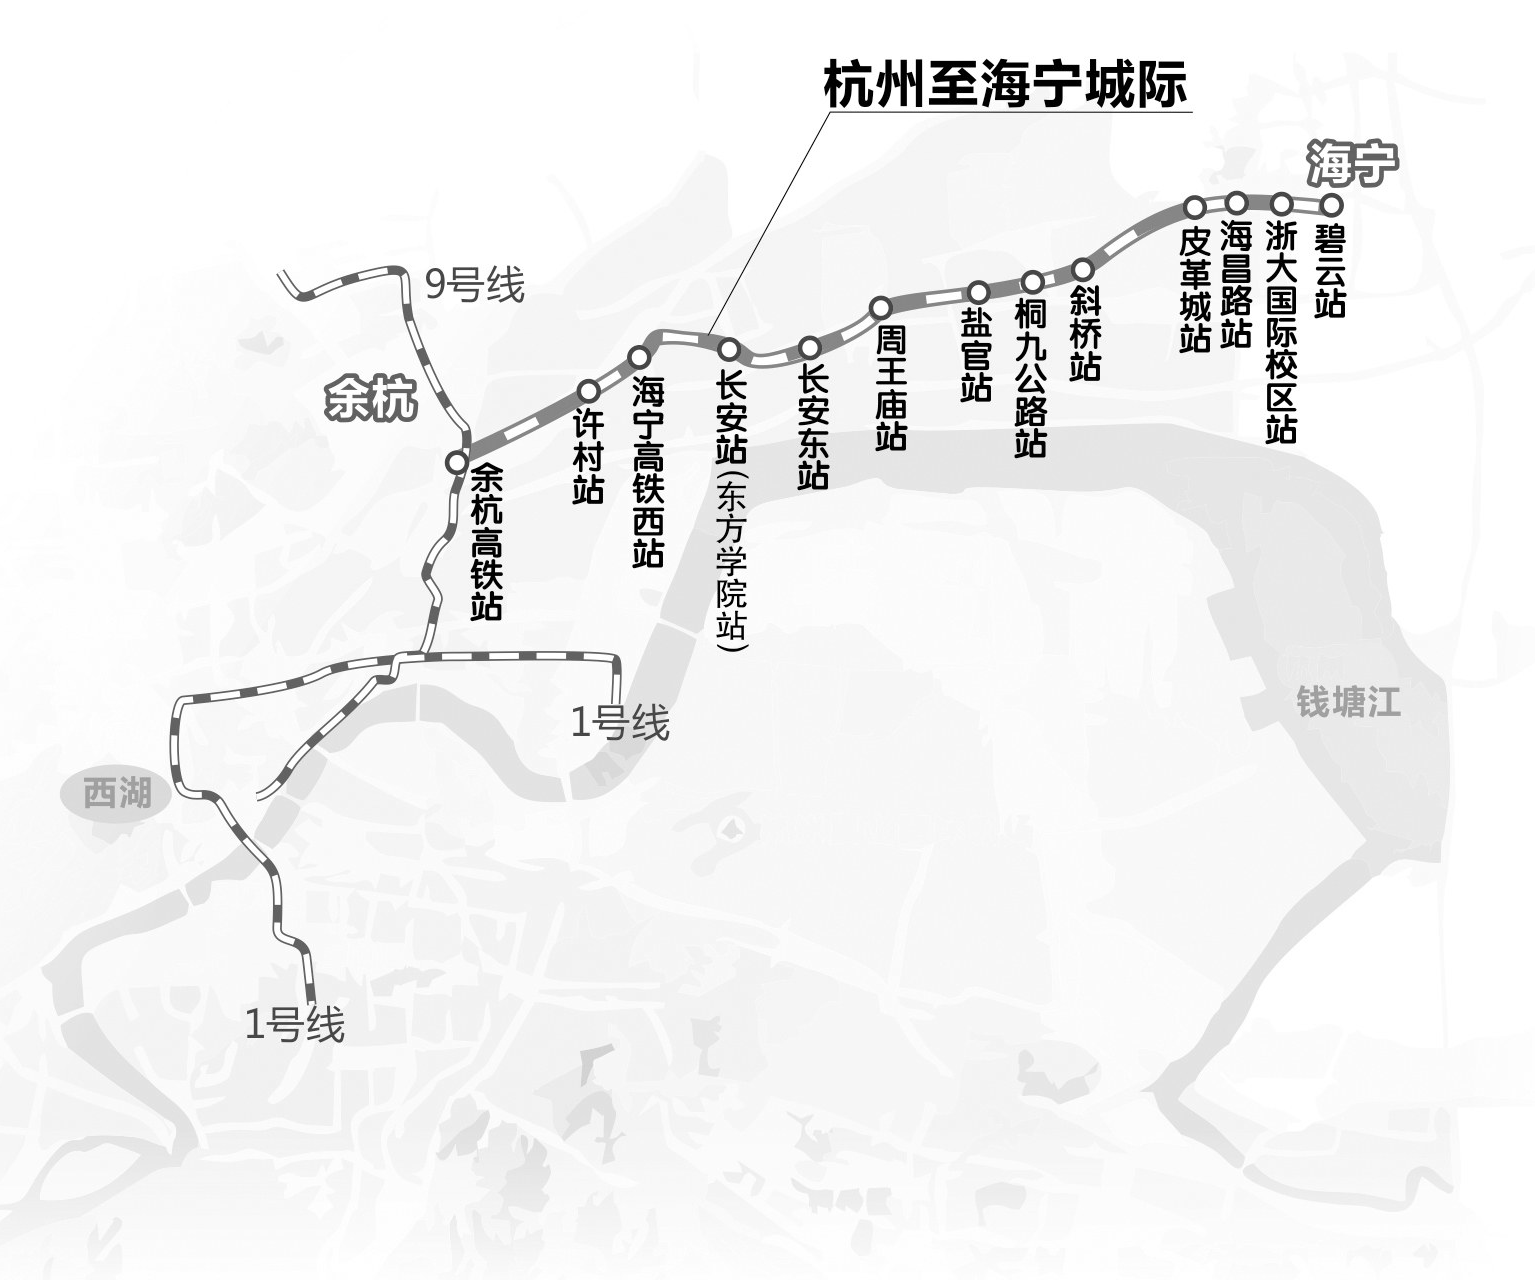 杭海城铁开始热滑,杭安城铁已纳入规划